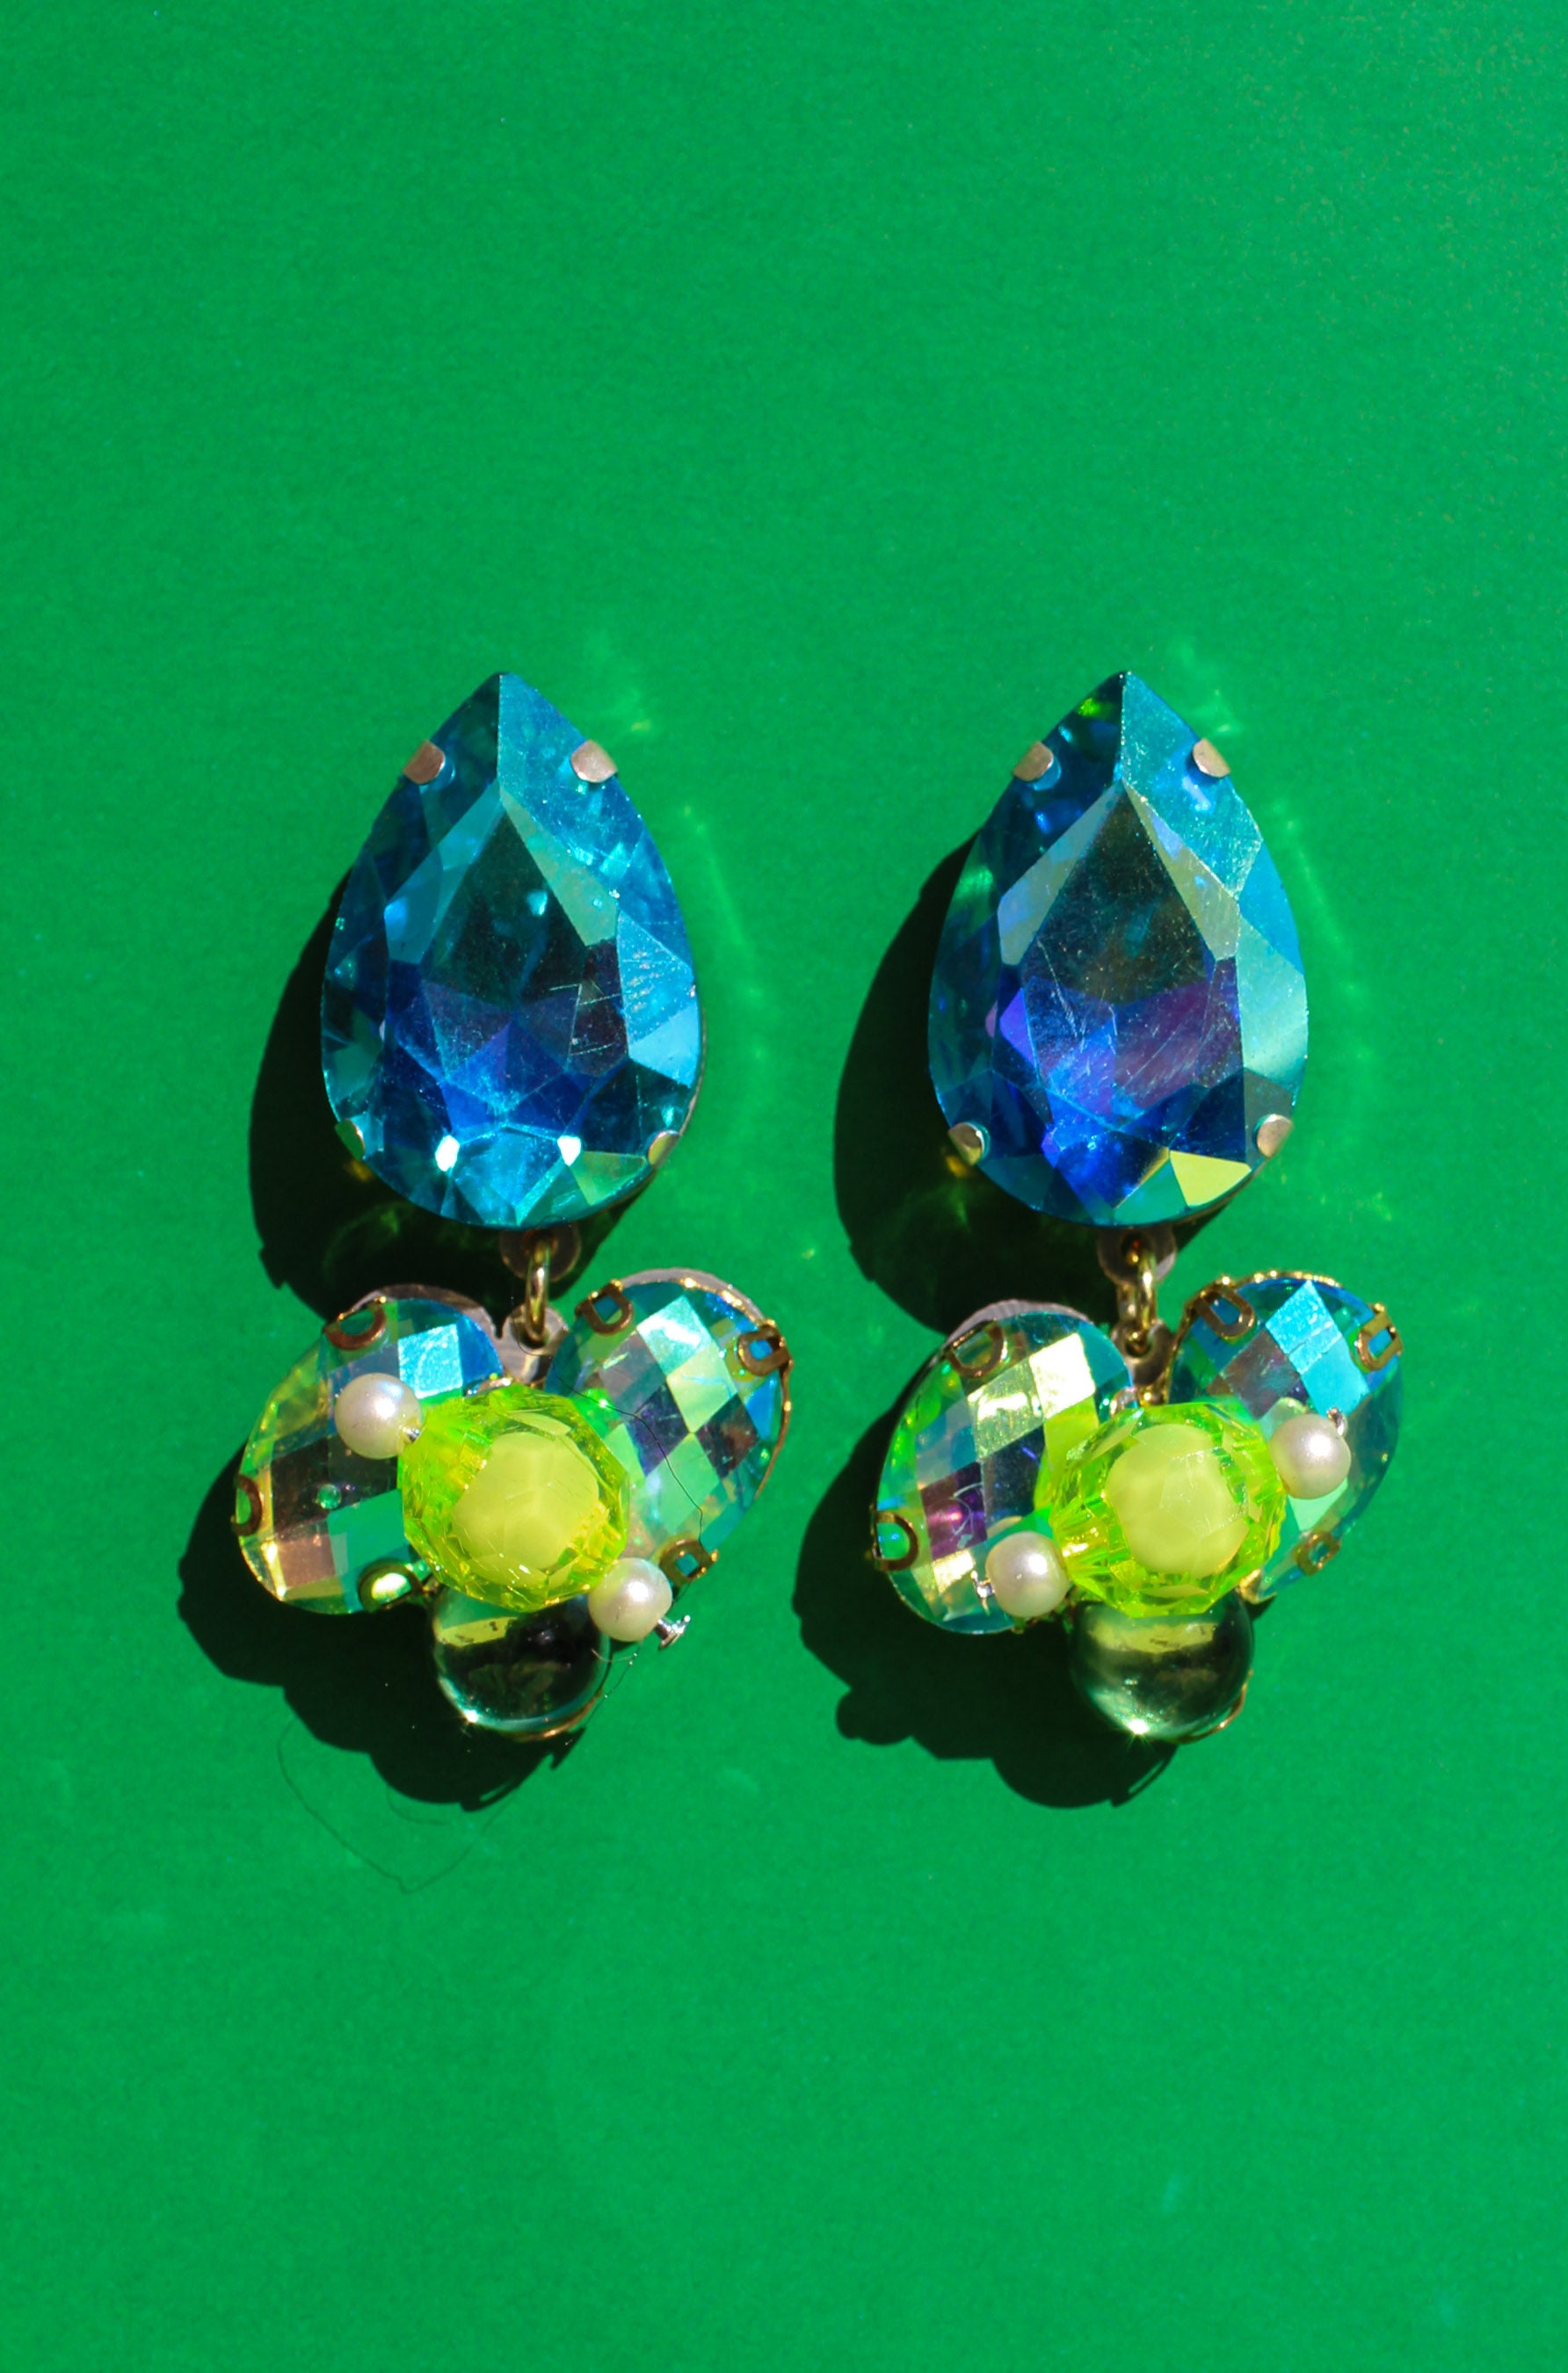 Seaglow Crystal Cluster Earrings